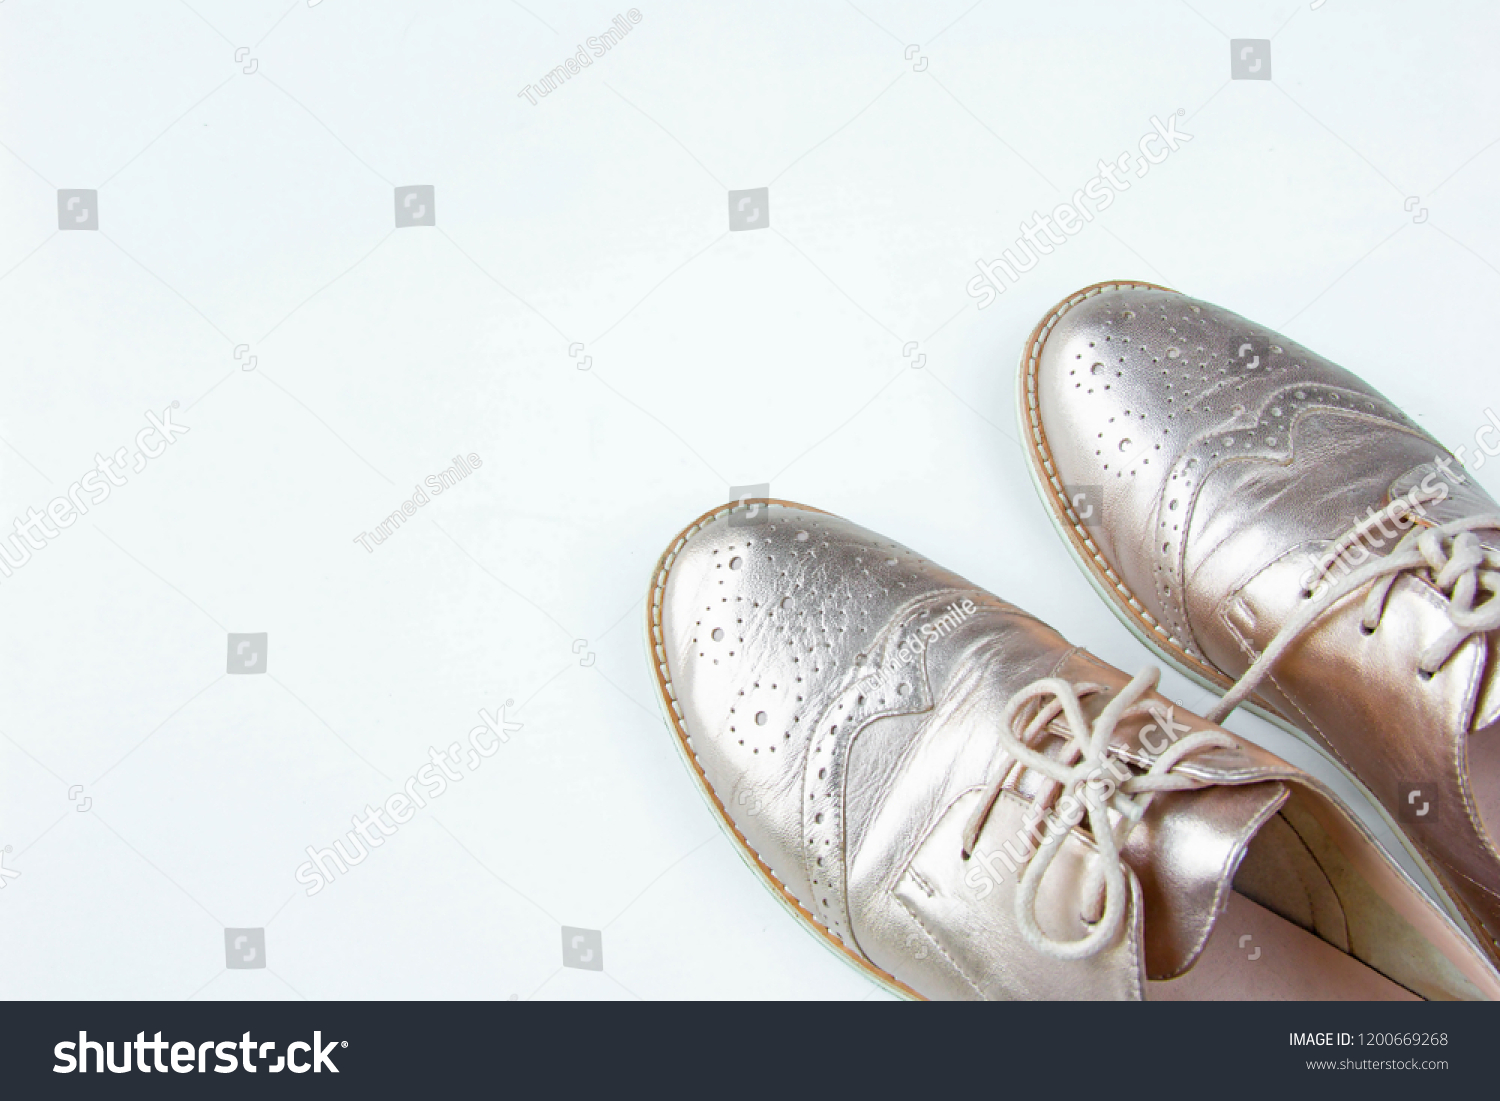 golden rose shoes